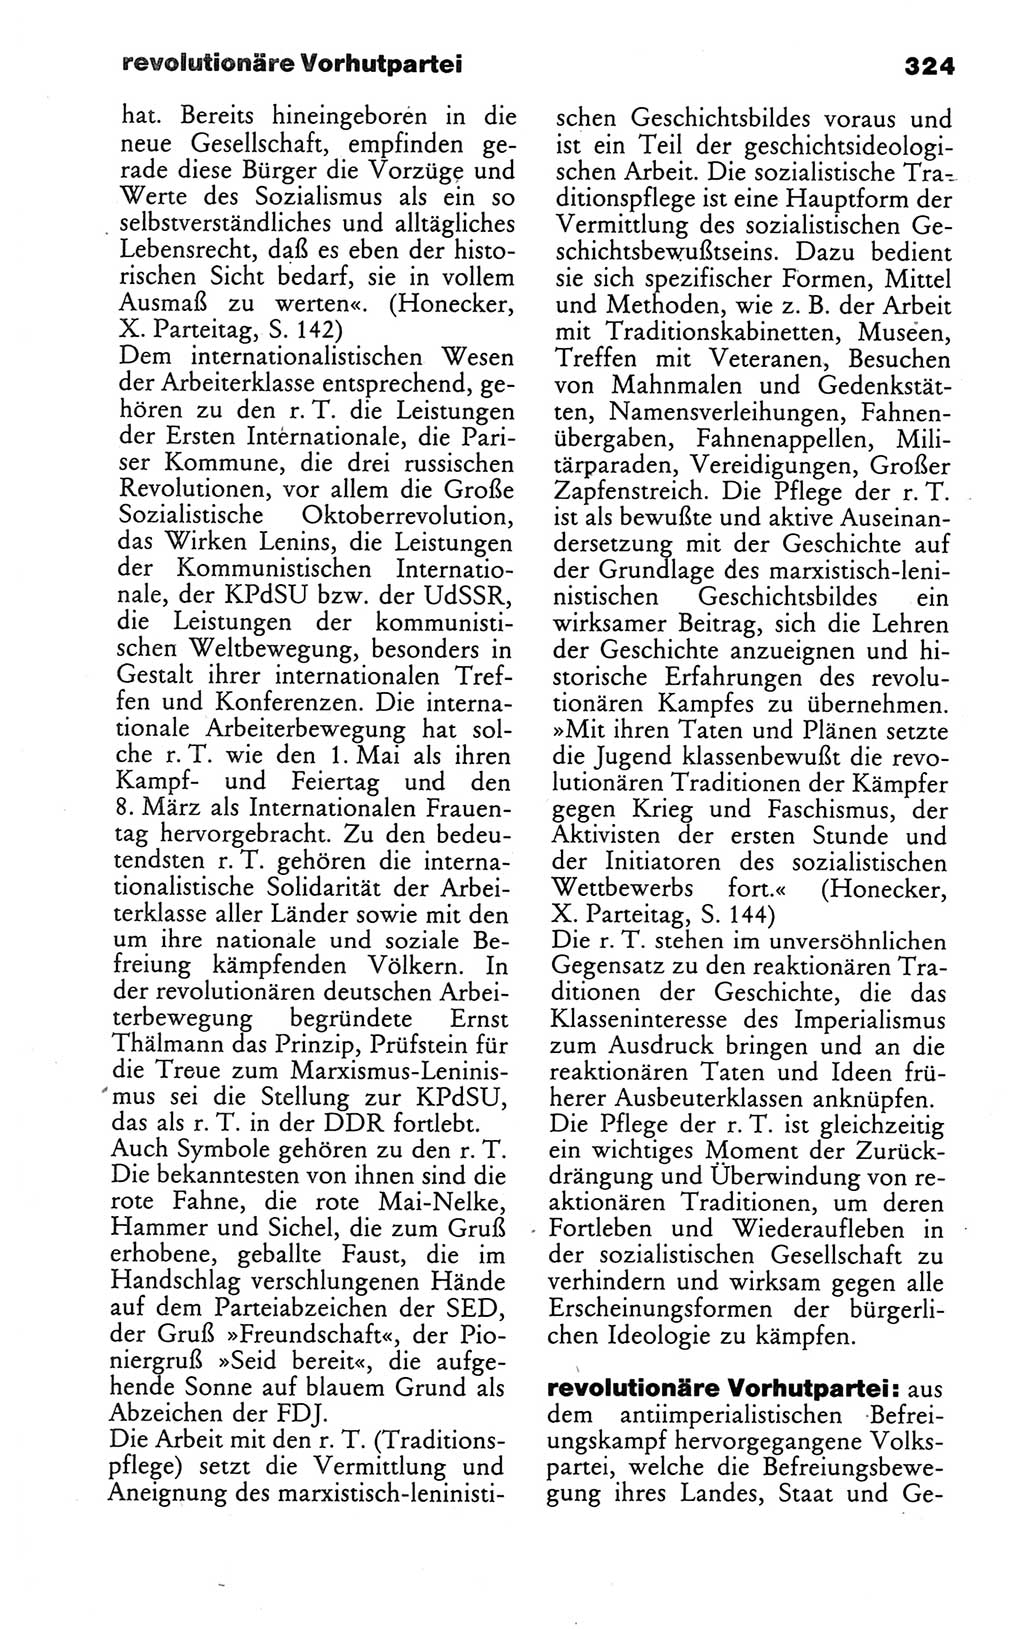 Wörterbuch des wissenschaftlichen Kommunismus [Deutsche Demokratische Republik (DDR)] 1986, Seite 324 (Wb. wiss. Komm. DDR 1986, S. 324)